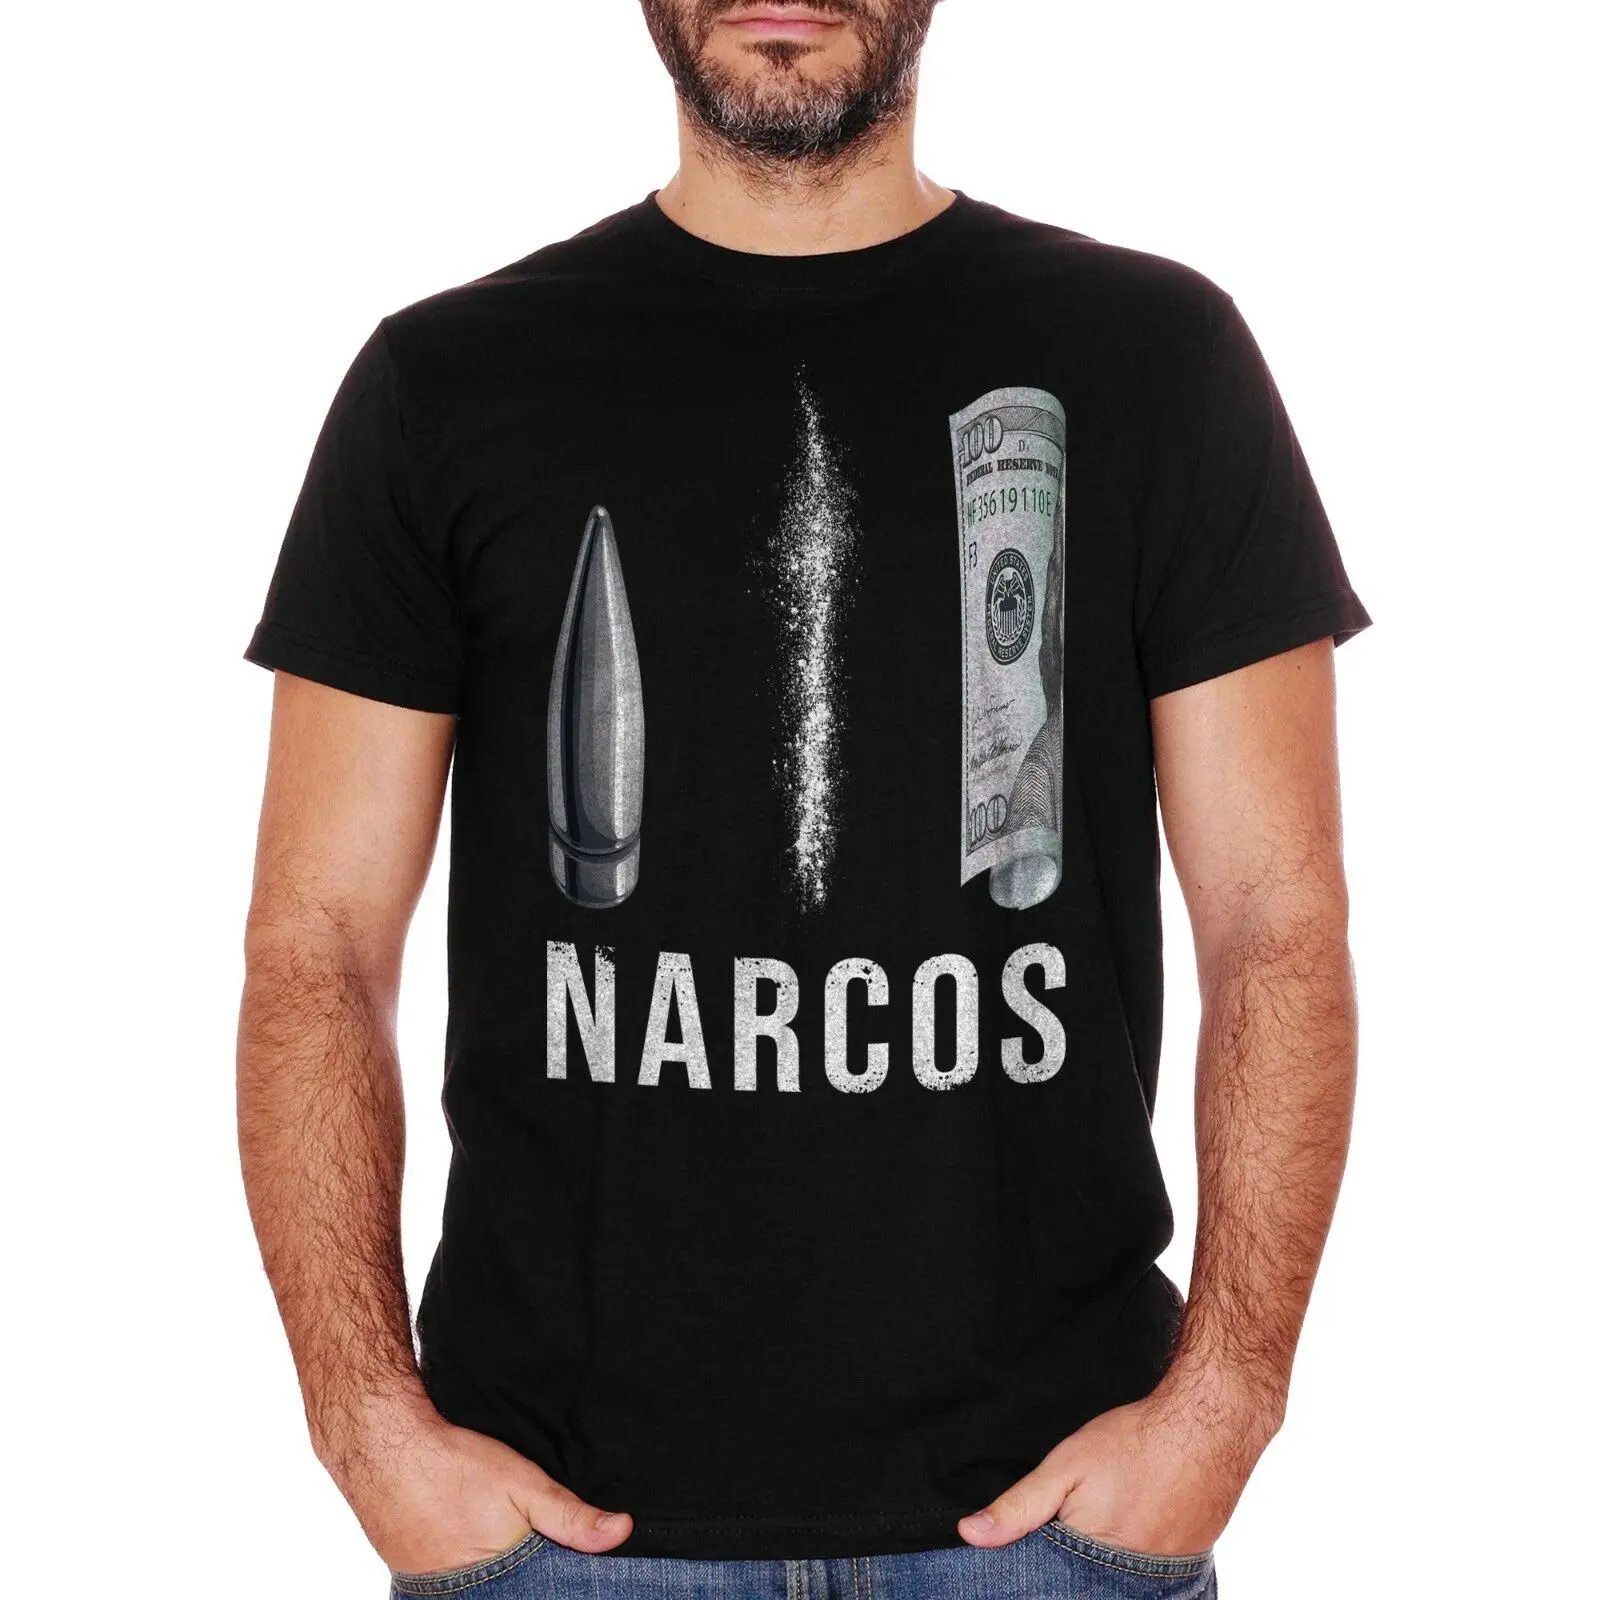 T shirt narcos Cali est 1536 Colombie cartel Inspiré Tee 